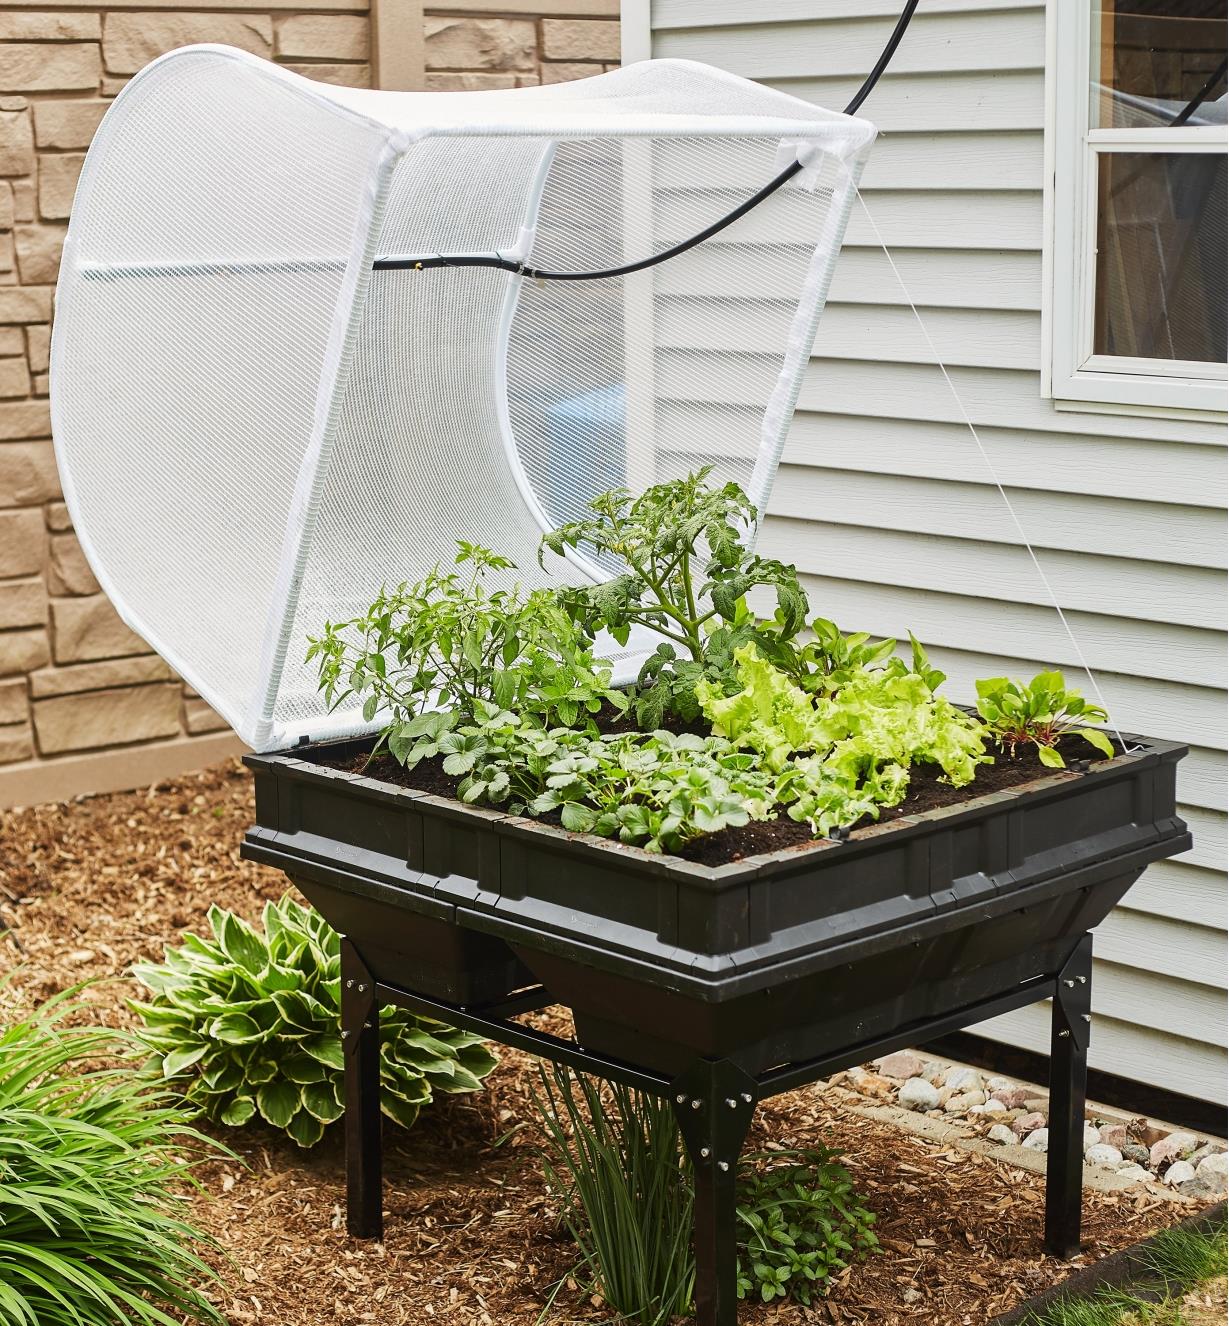 Bac de culture Vegepod avec support au couvercle ouvert rempli de plants de légumes dans un jardin